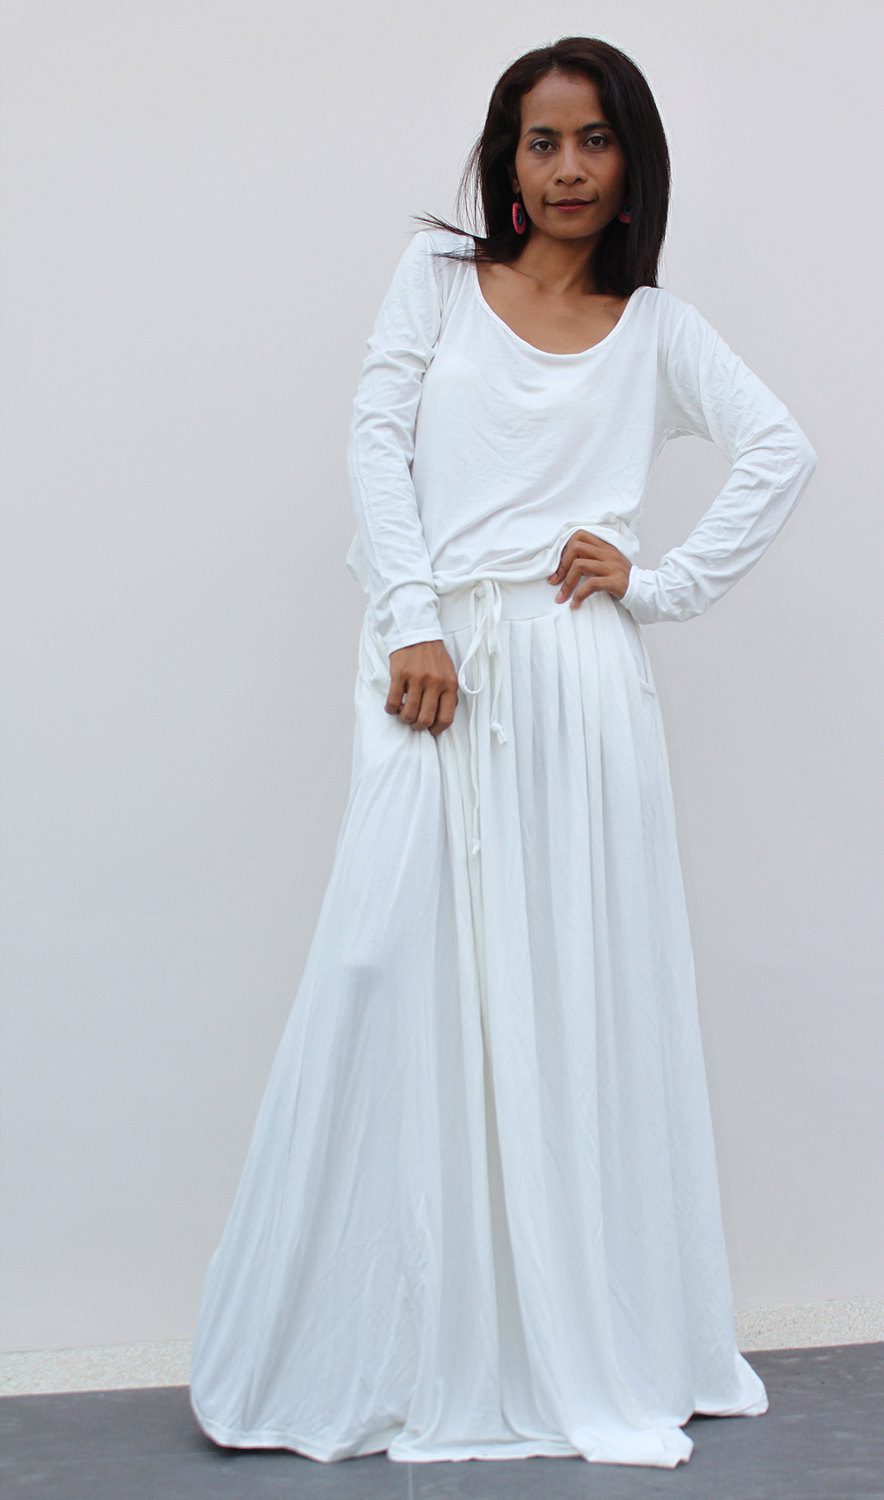 White Dress Full Length : How To Look Good 2017-2018